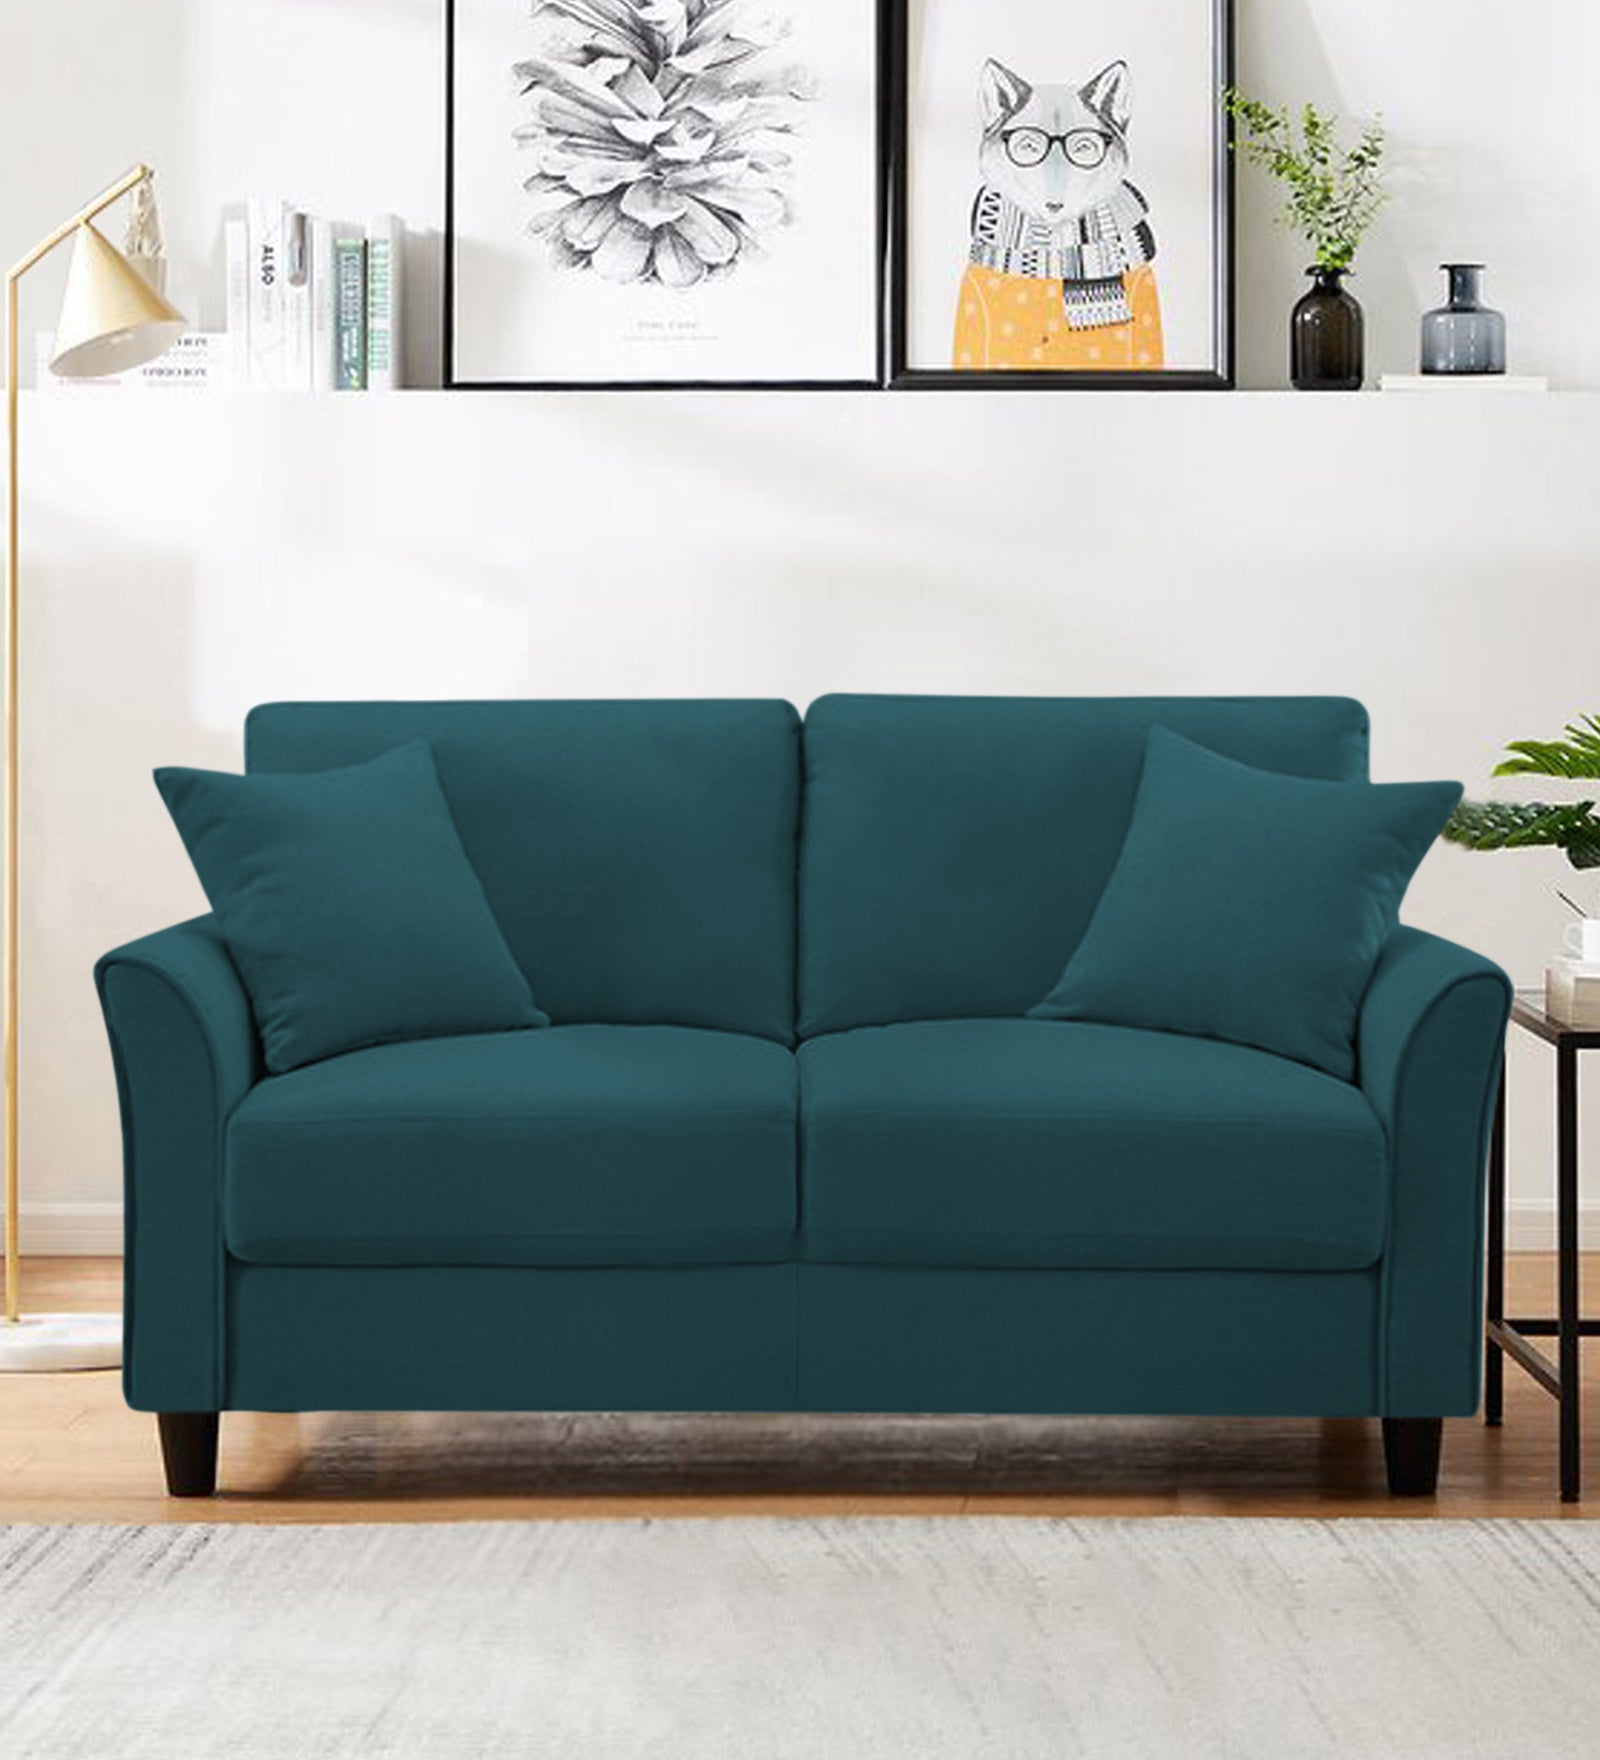 Daroo Velvet 2 Seater Sofa In Arabian Green Colour